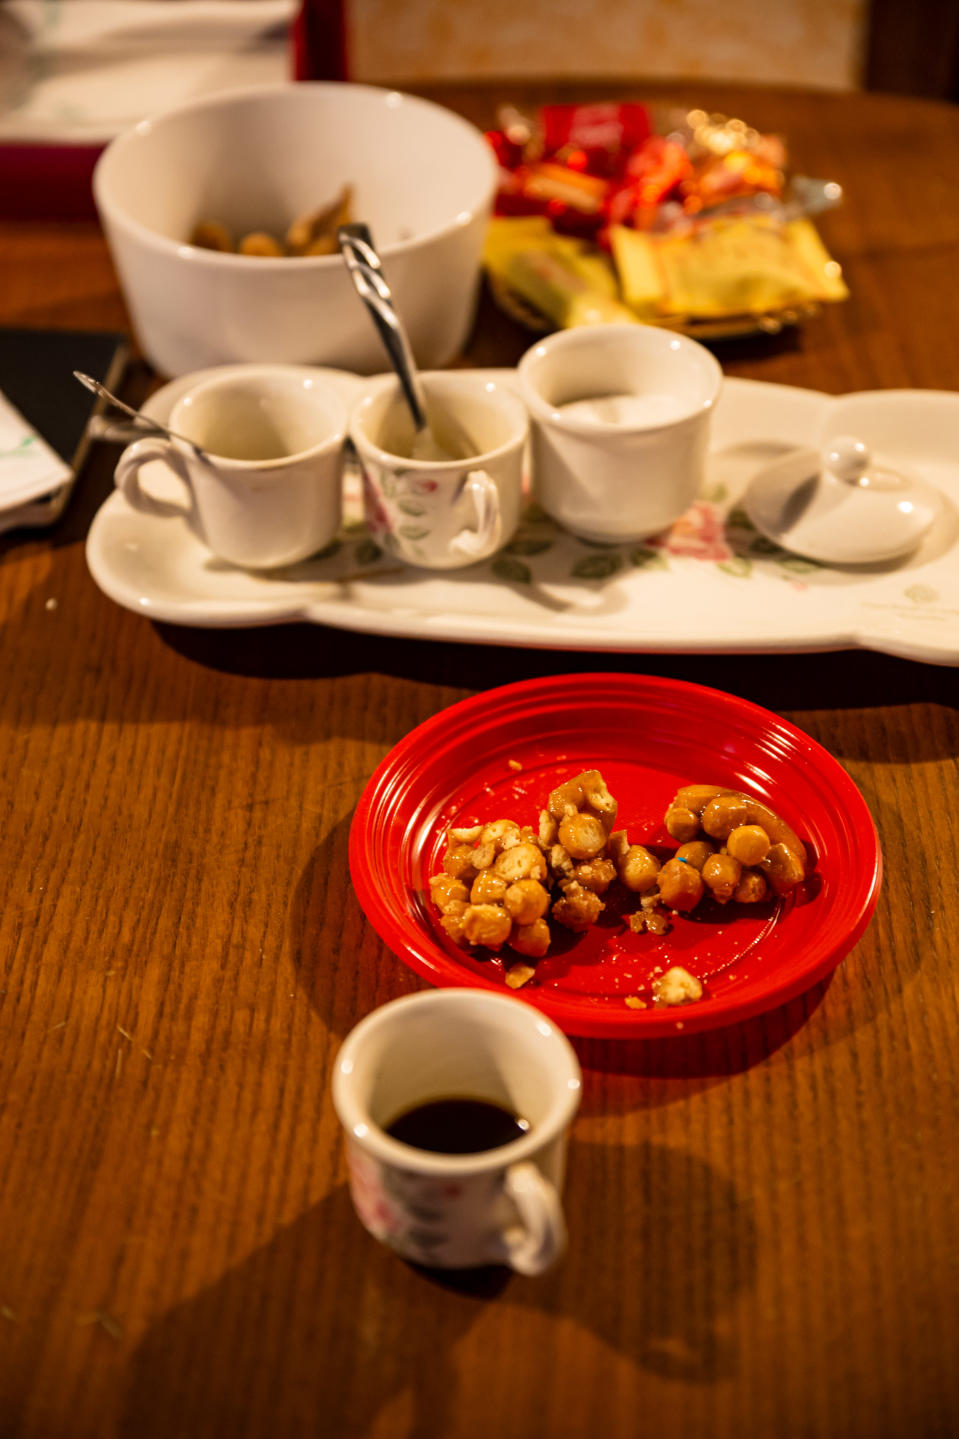 Pöydällä näkyy pieniä espresso-kahvikuppeja sekä lautasella naposteltavaa, ilmeisesti manteleita tai joitakin pähkinöitä.